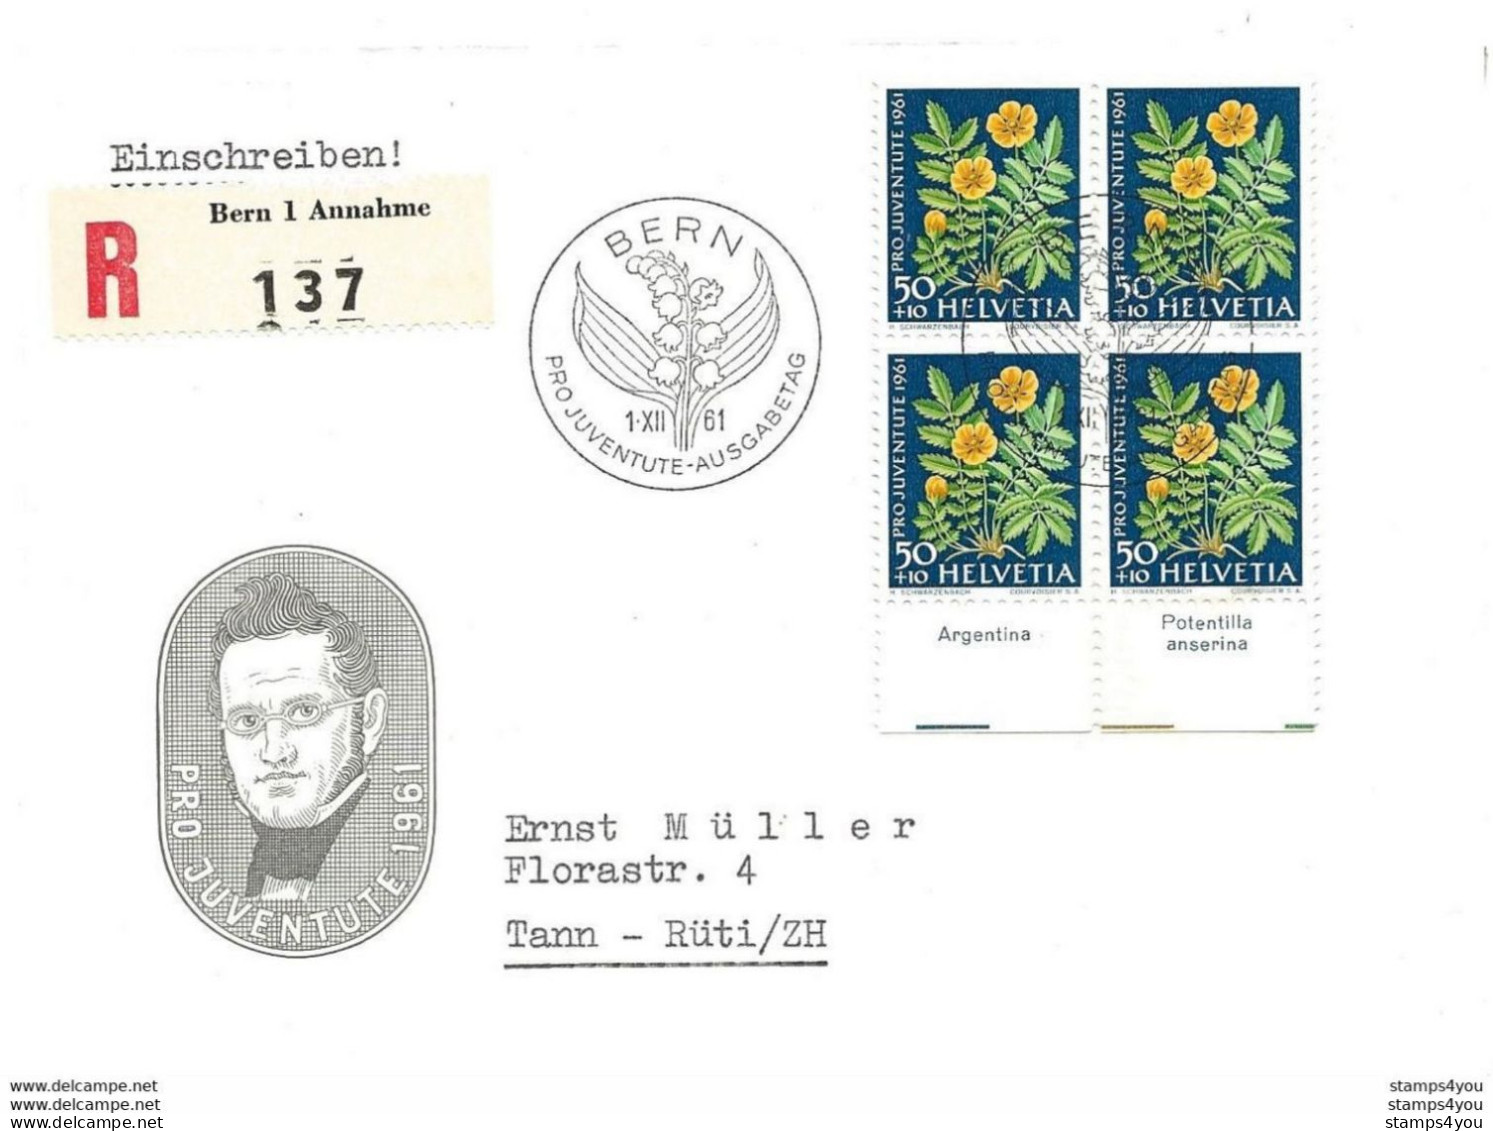 33 - 45 - Enveloppe Recommandée Avec Bloc De 4 Timbres Pro Juventute 1961 - Oblit Spéciale 1er Jour - Lettres & Documents